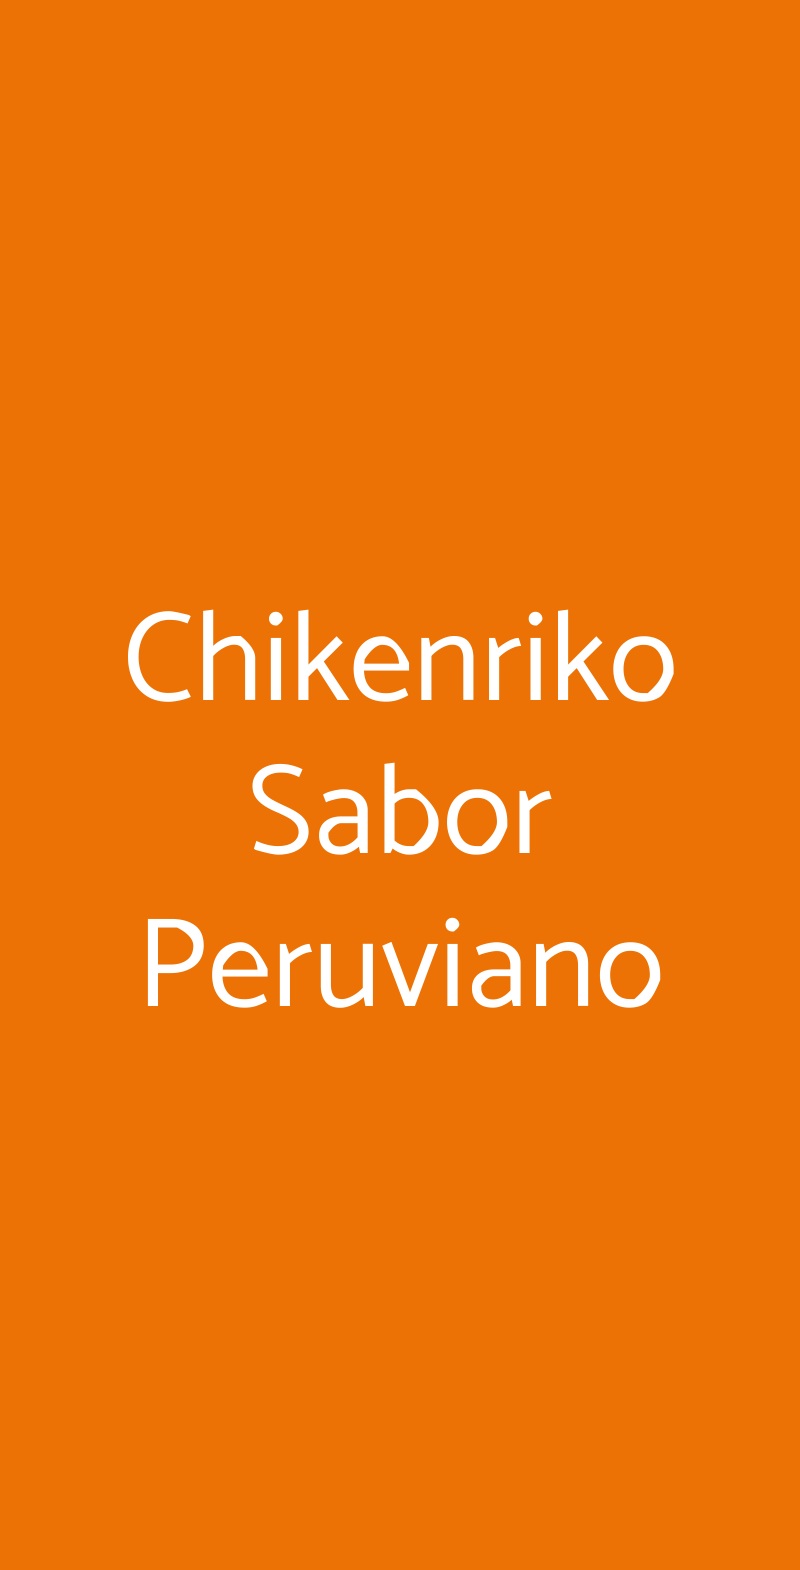 Chikenriko Sabor Peruviano Torino menù 1 pagina